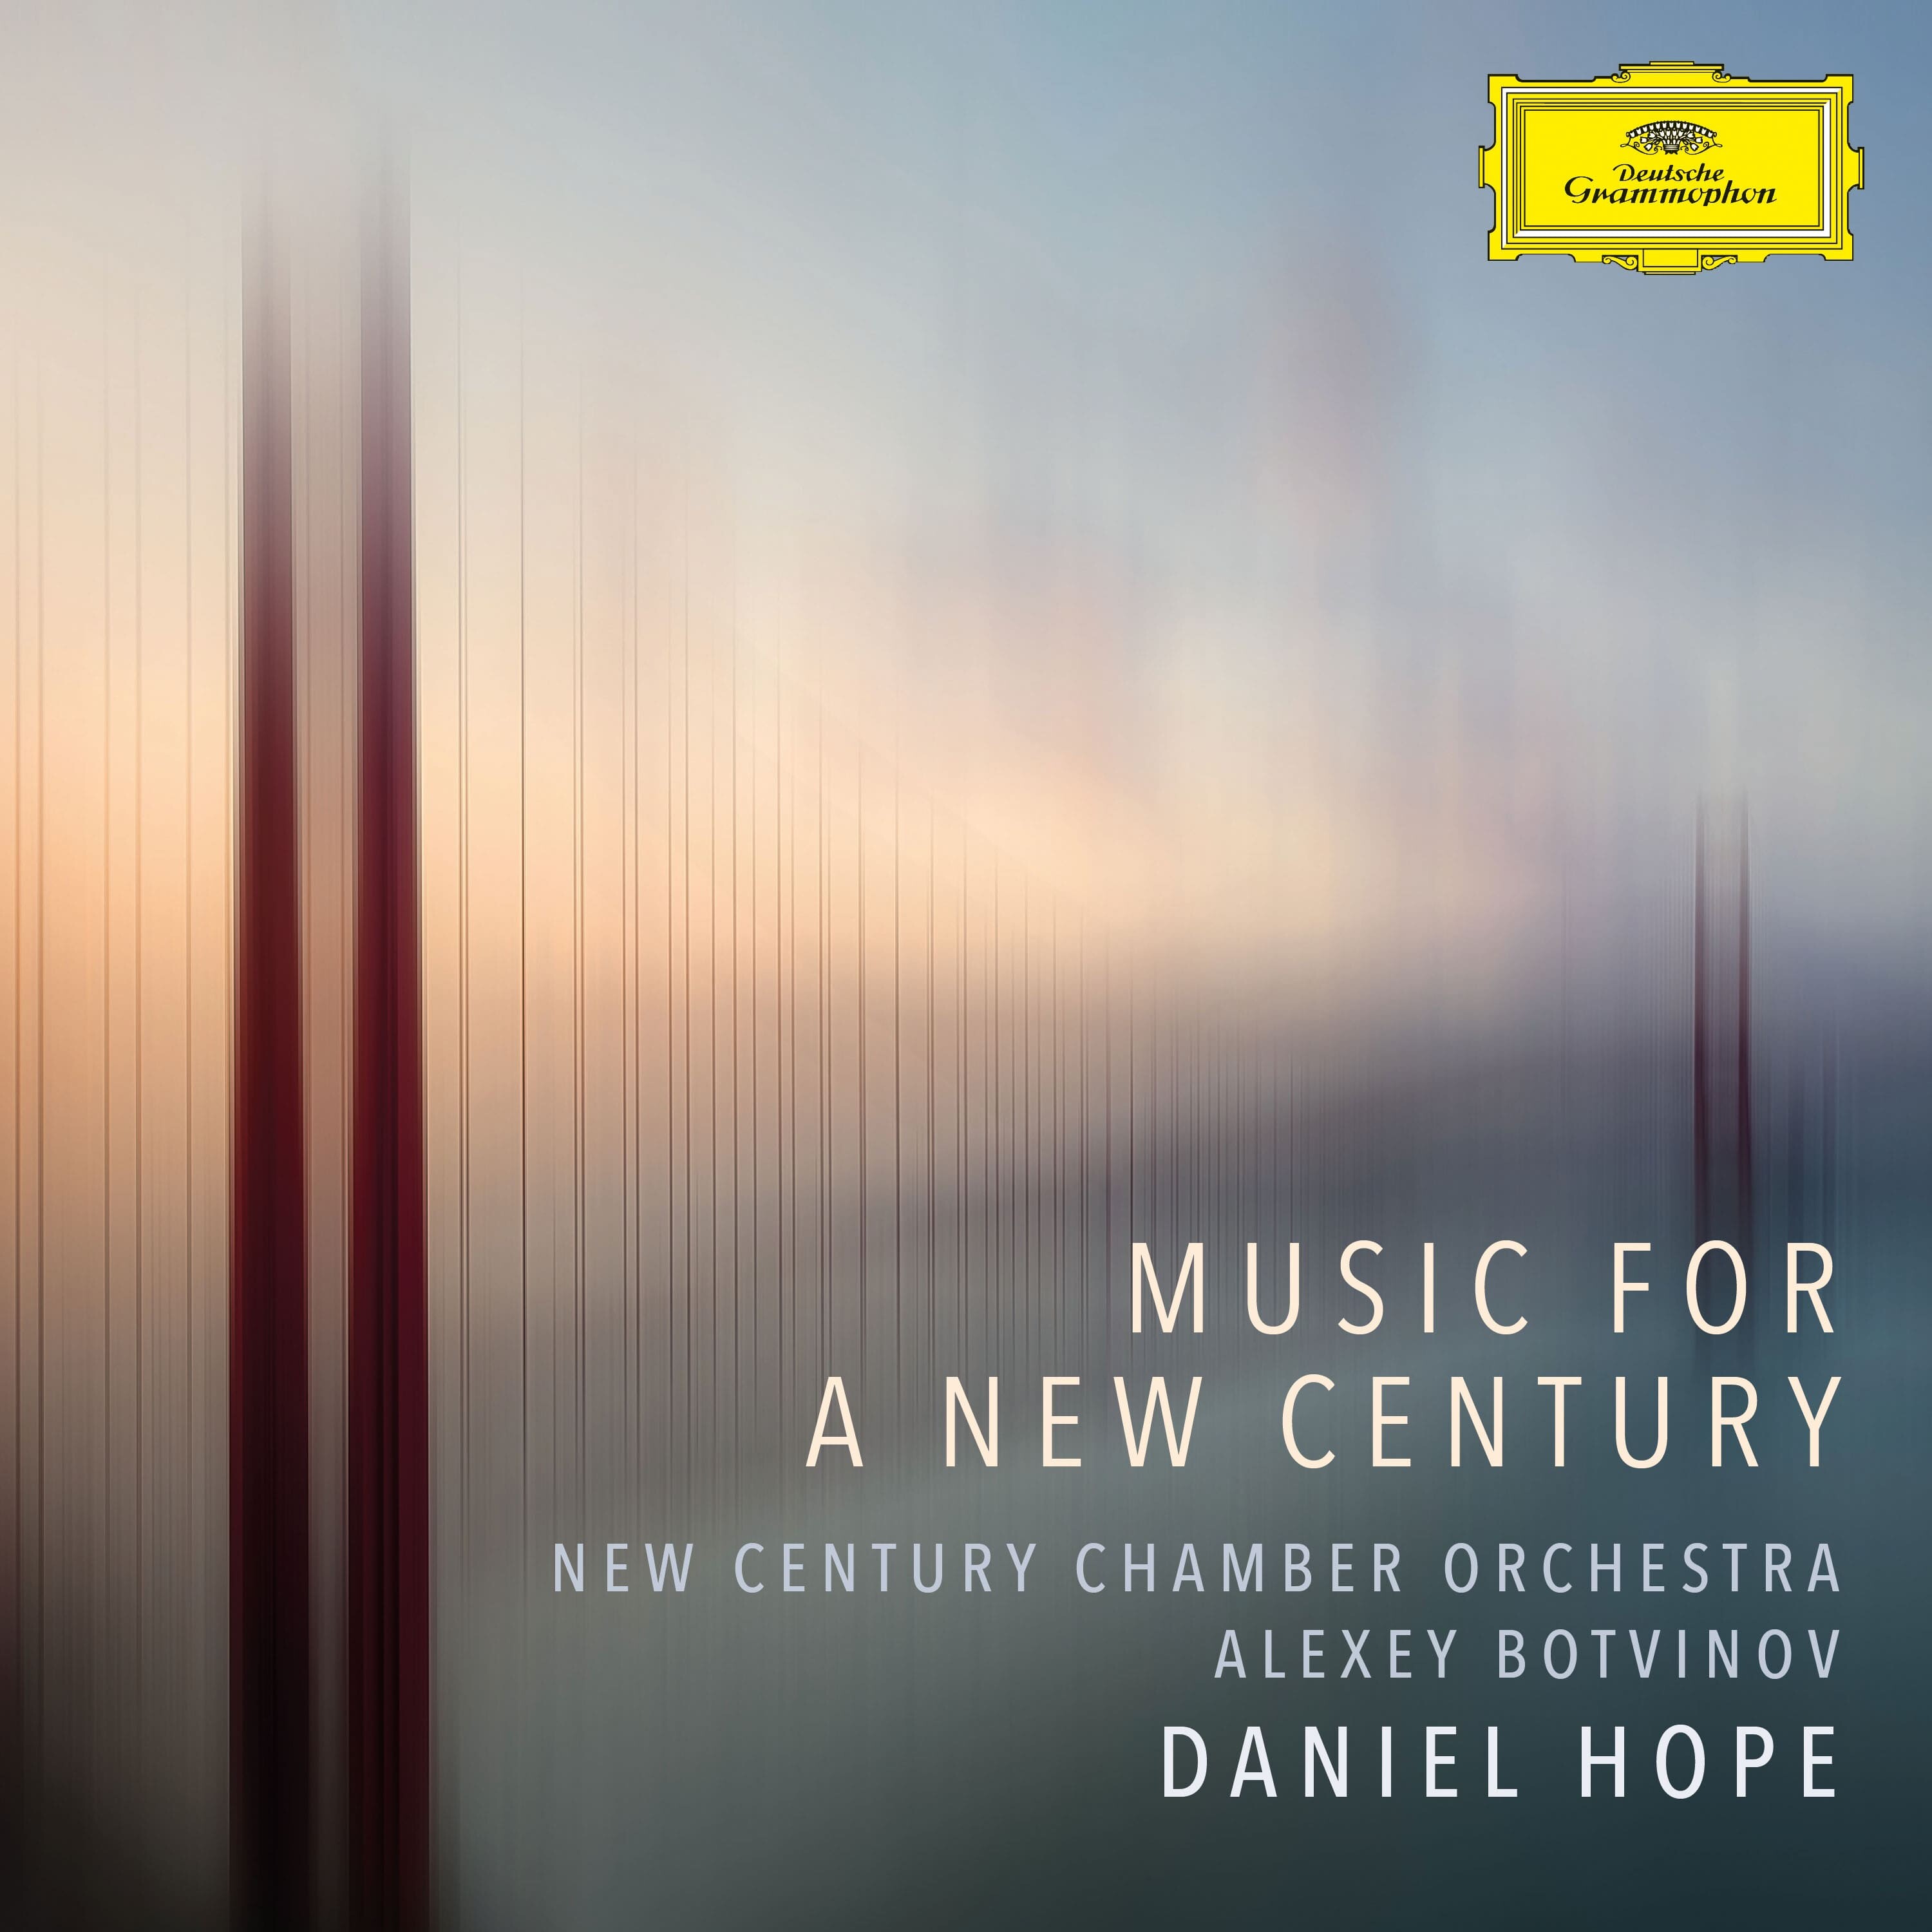 Deutsche Grammophon - Der offizielle Shop - Music For a New Century -  Daniel Hope - CD